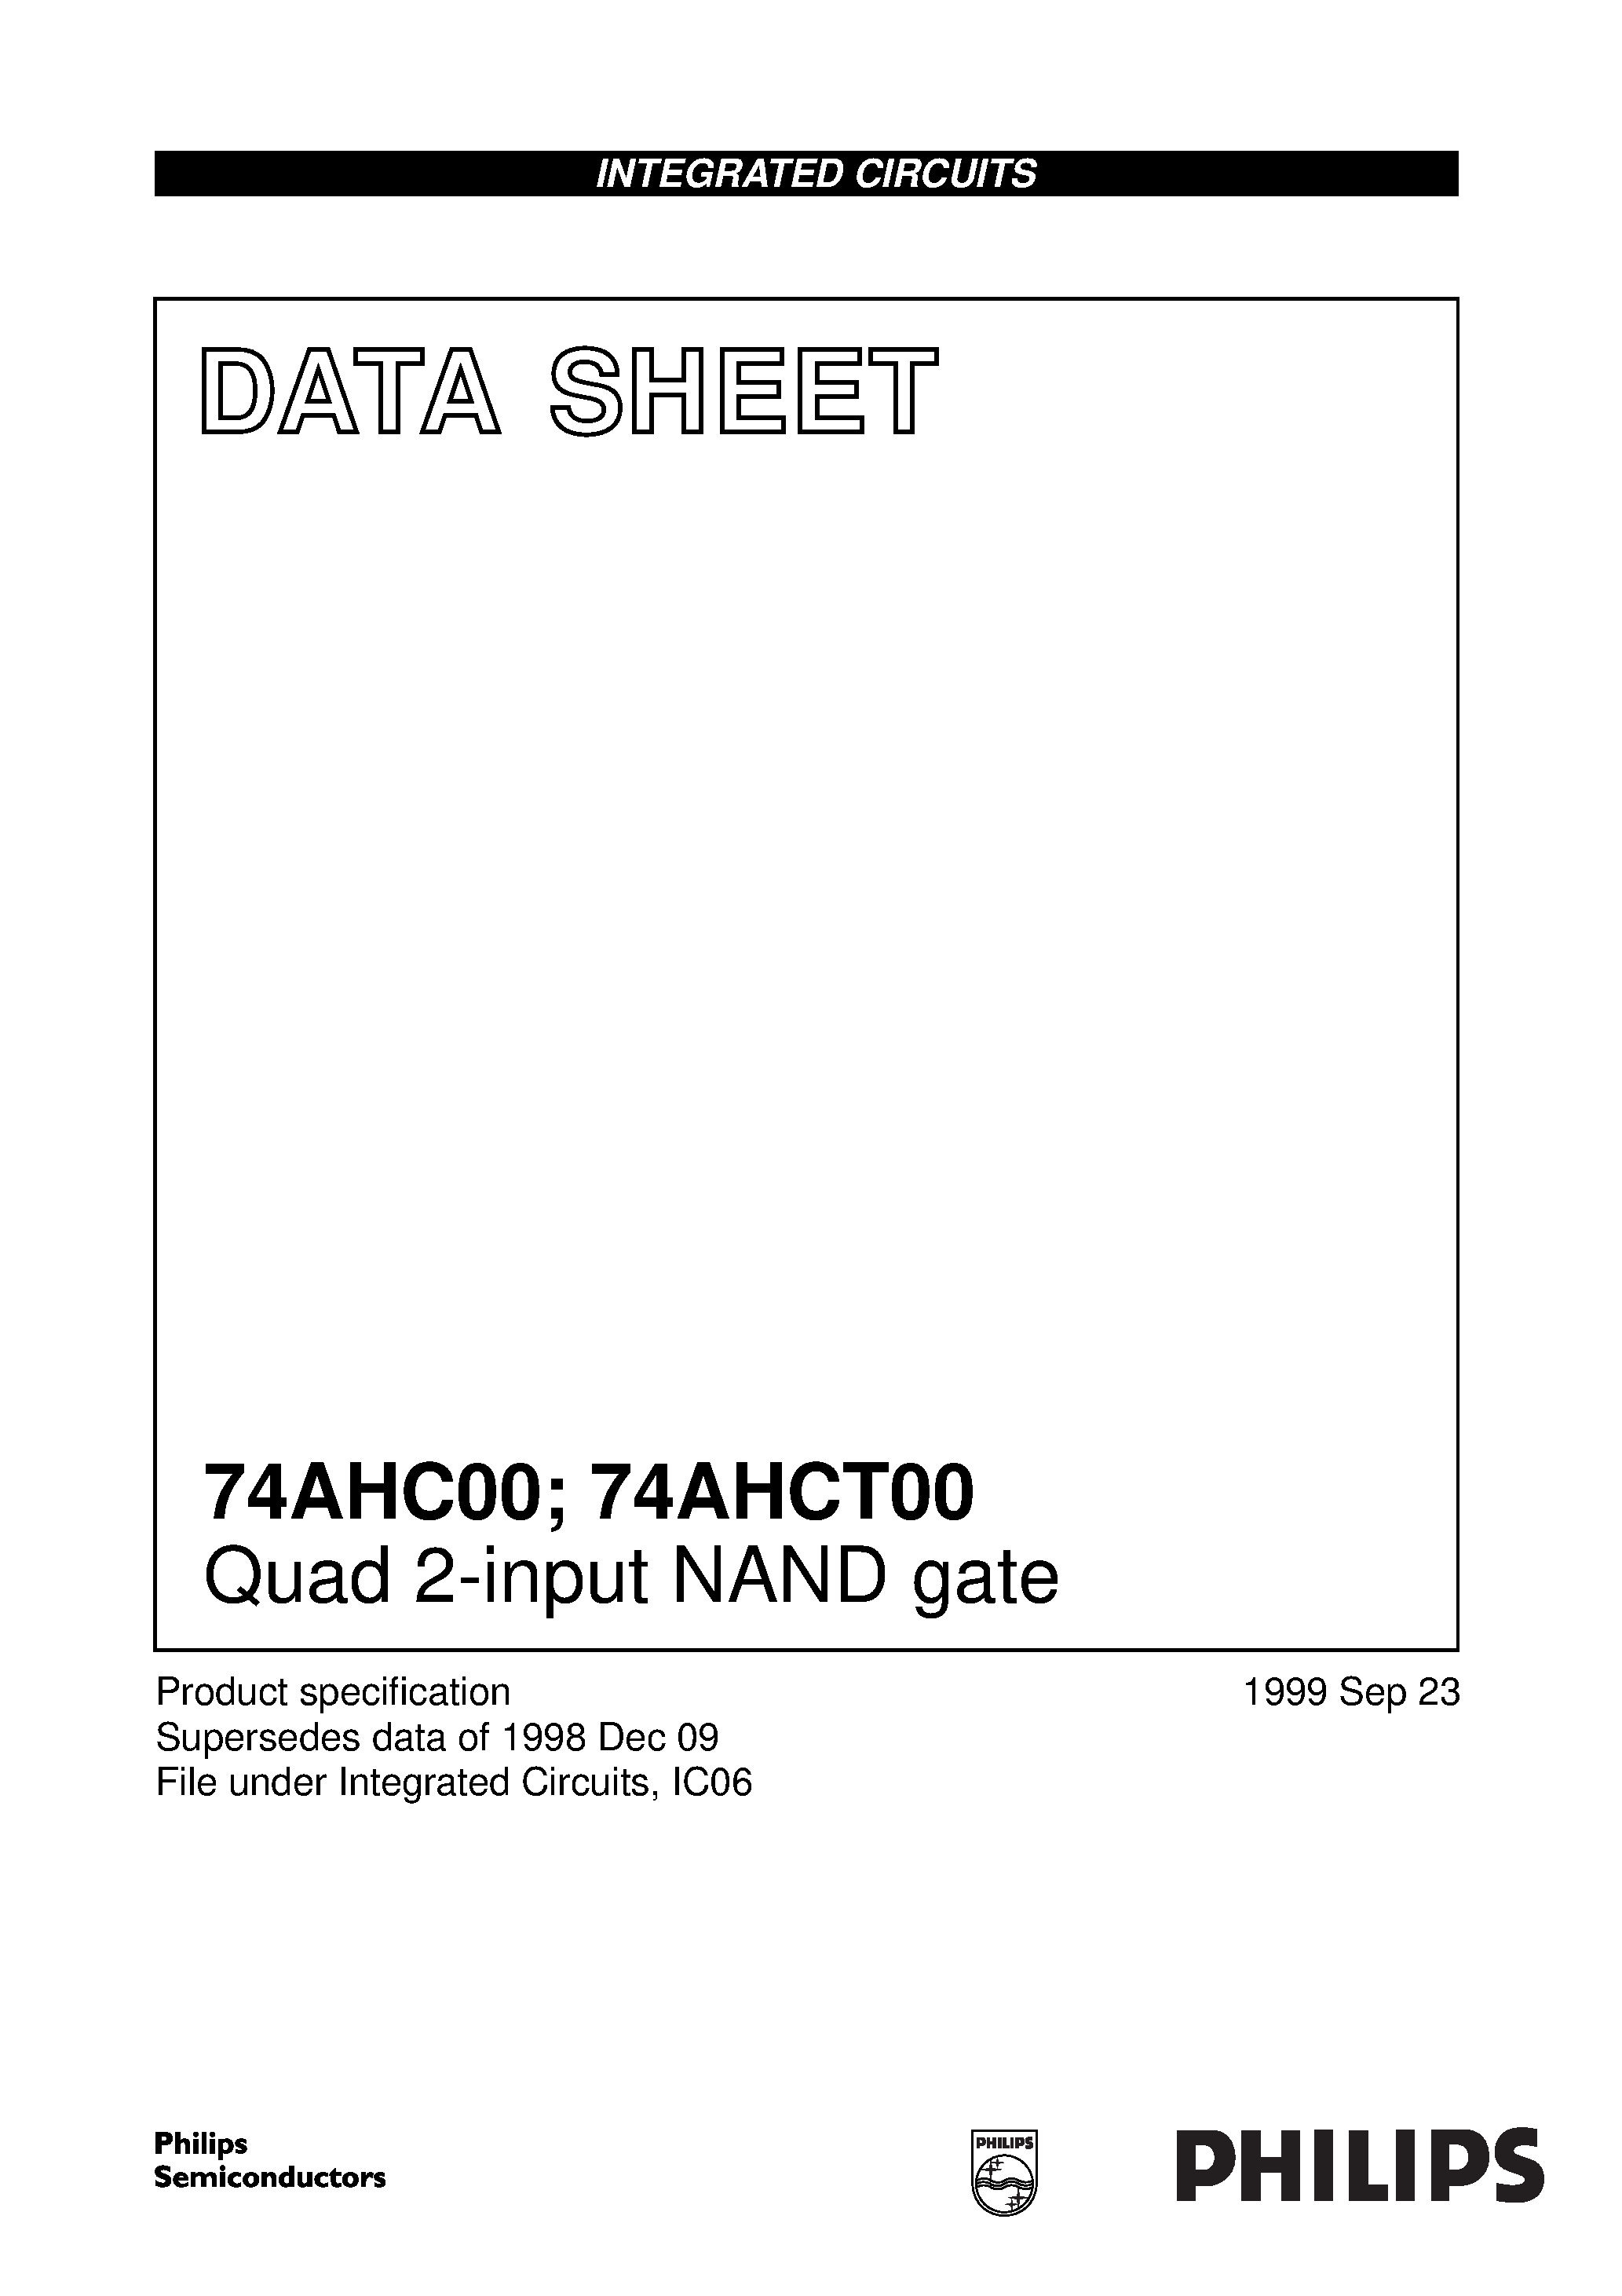 Даташит 74AHC00PW - Quad 2-input NAND gate страница 1